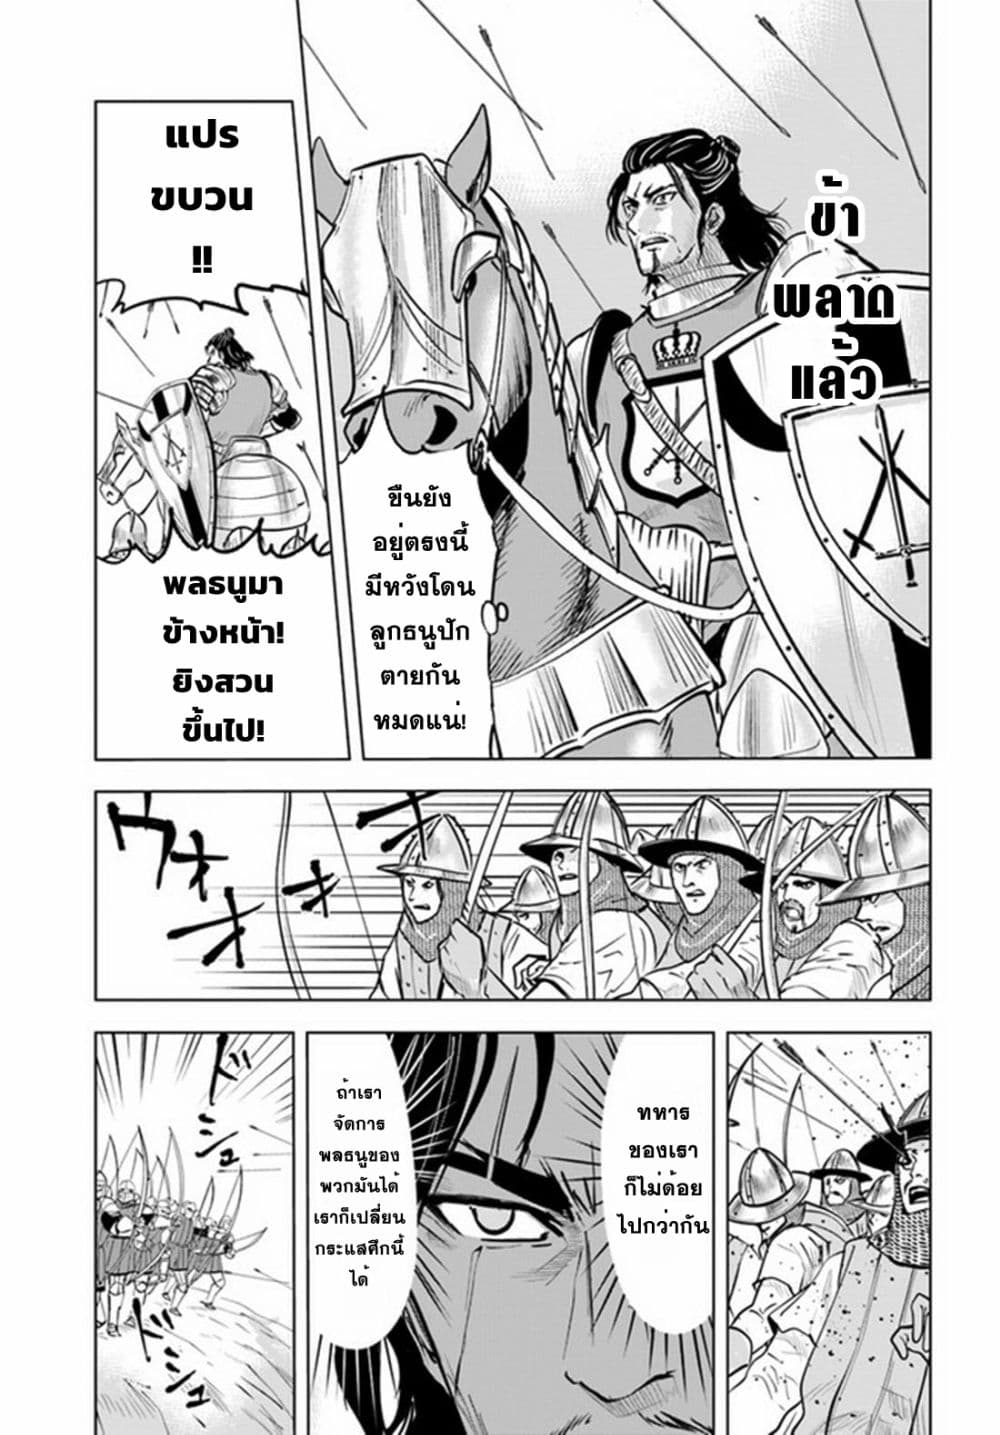 Oukoku e Tsuzuku Michi dorei Kenshi no Nariagari Eiyutan (Haaremu Raifu) - Road to the Kingdom Slave Swordsman the Rise of Heroes - Harem Life 41-41